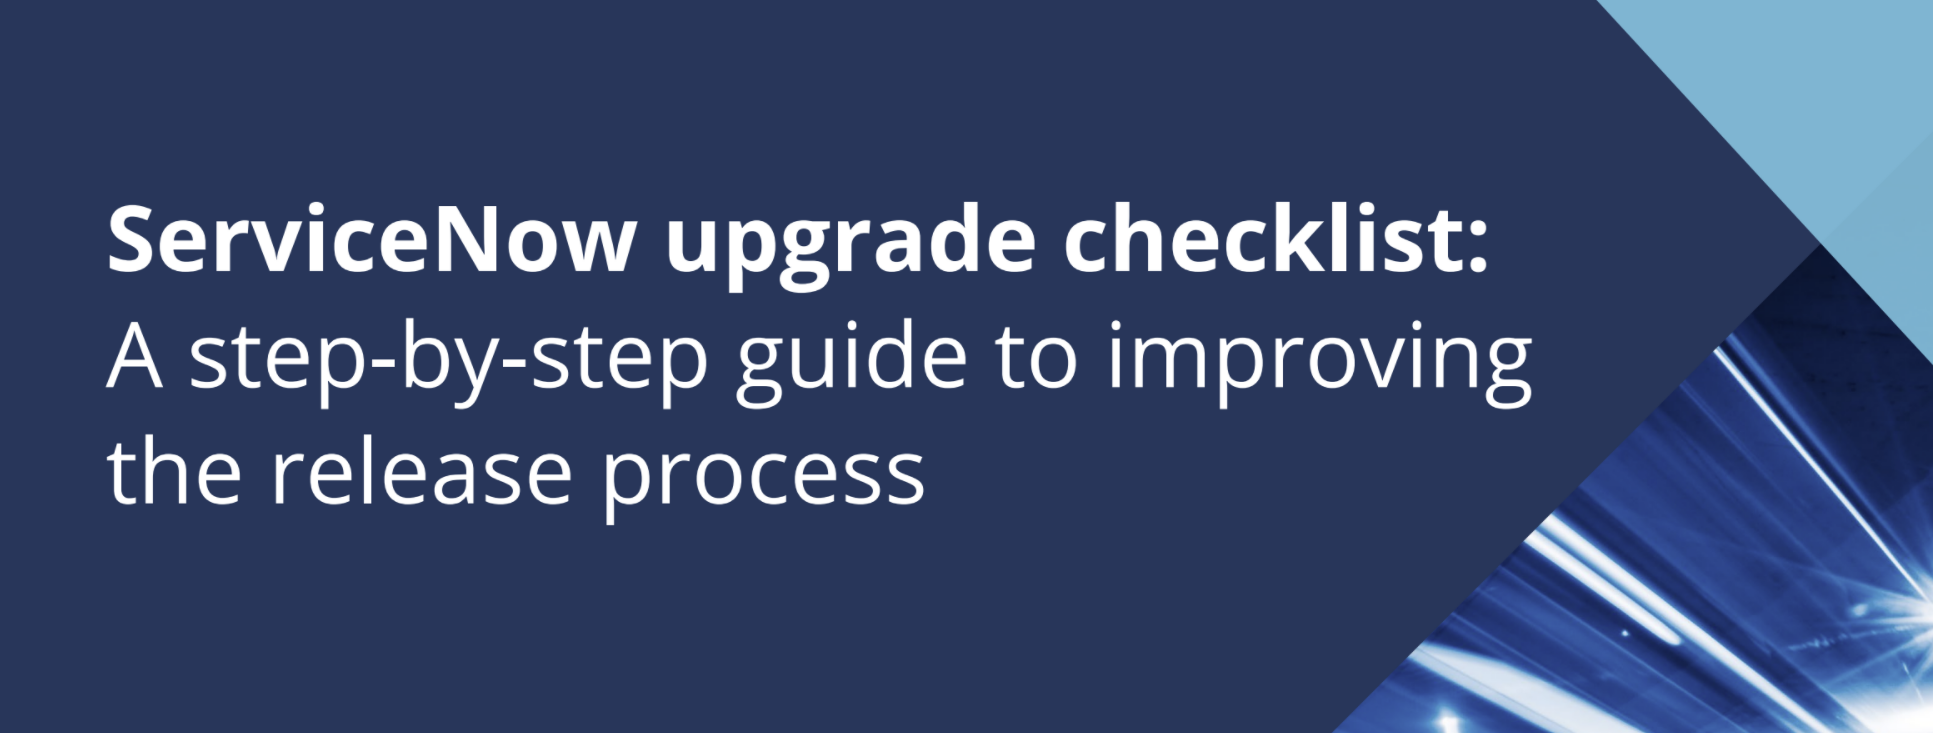 ServiceNow Upgrade Checklist